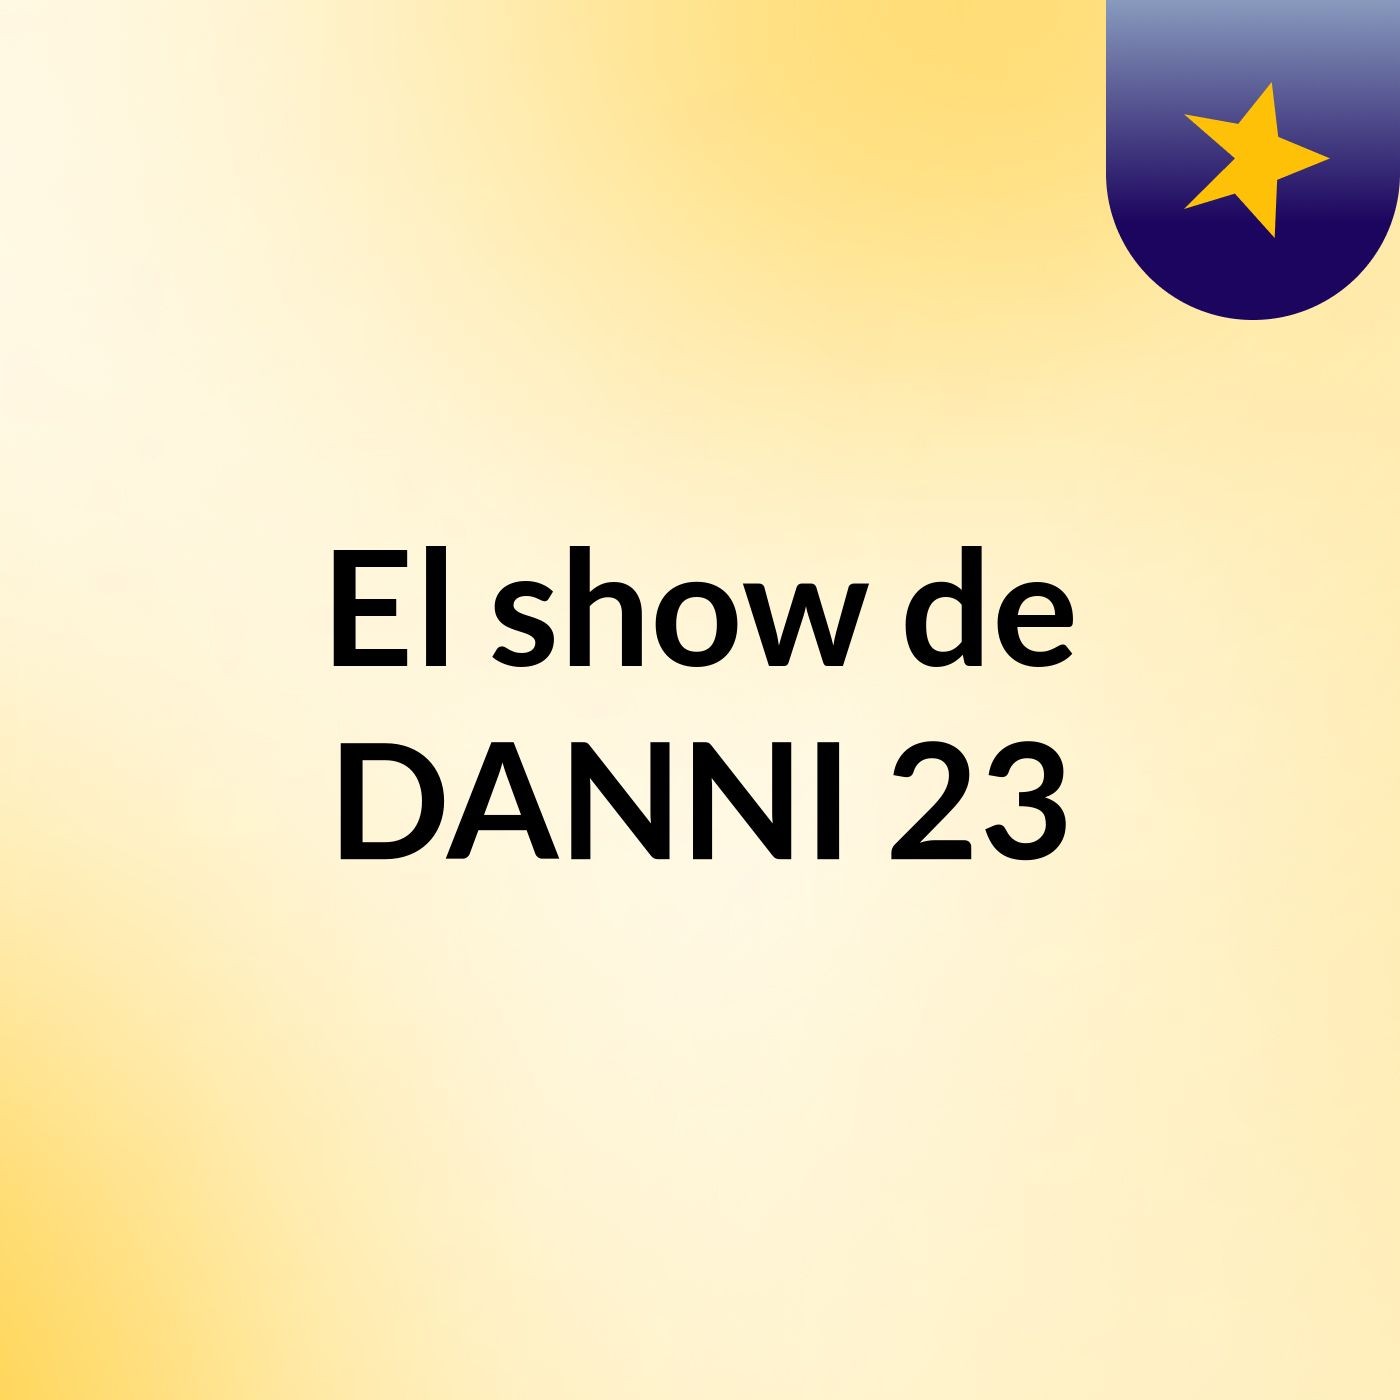 El show de DANNI 23